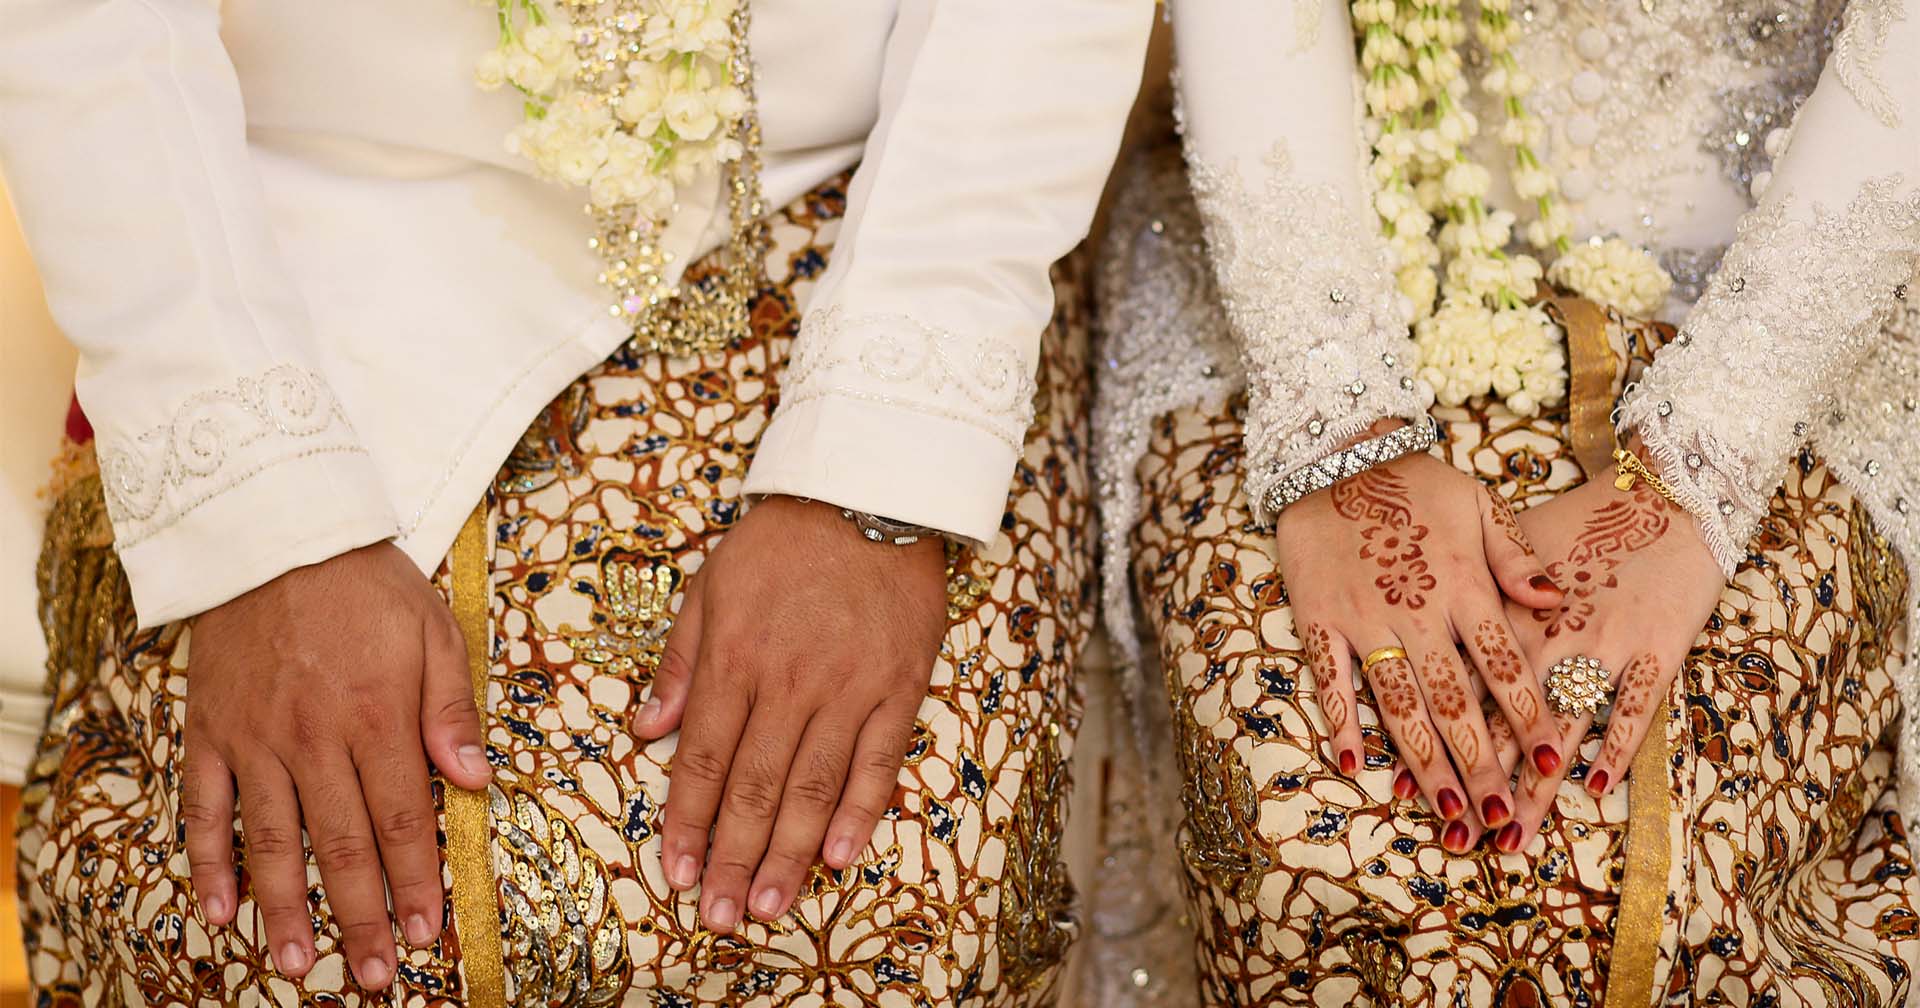 อินโดนีเซียผ่านกฎหมาย ‘แบนเซ็กซ์นอกสมรส’ หากฝ่าฝืนมีโทษจำคุก 1 ปี